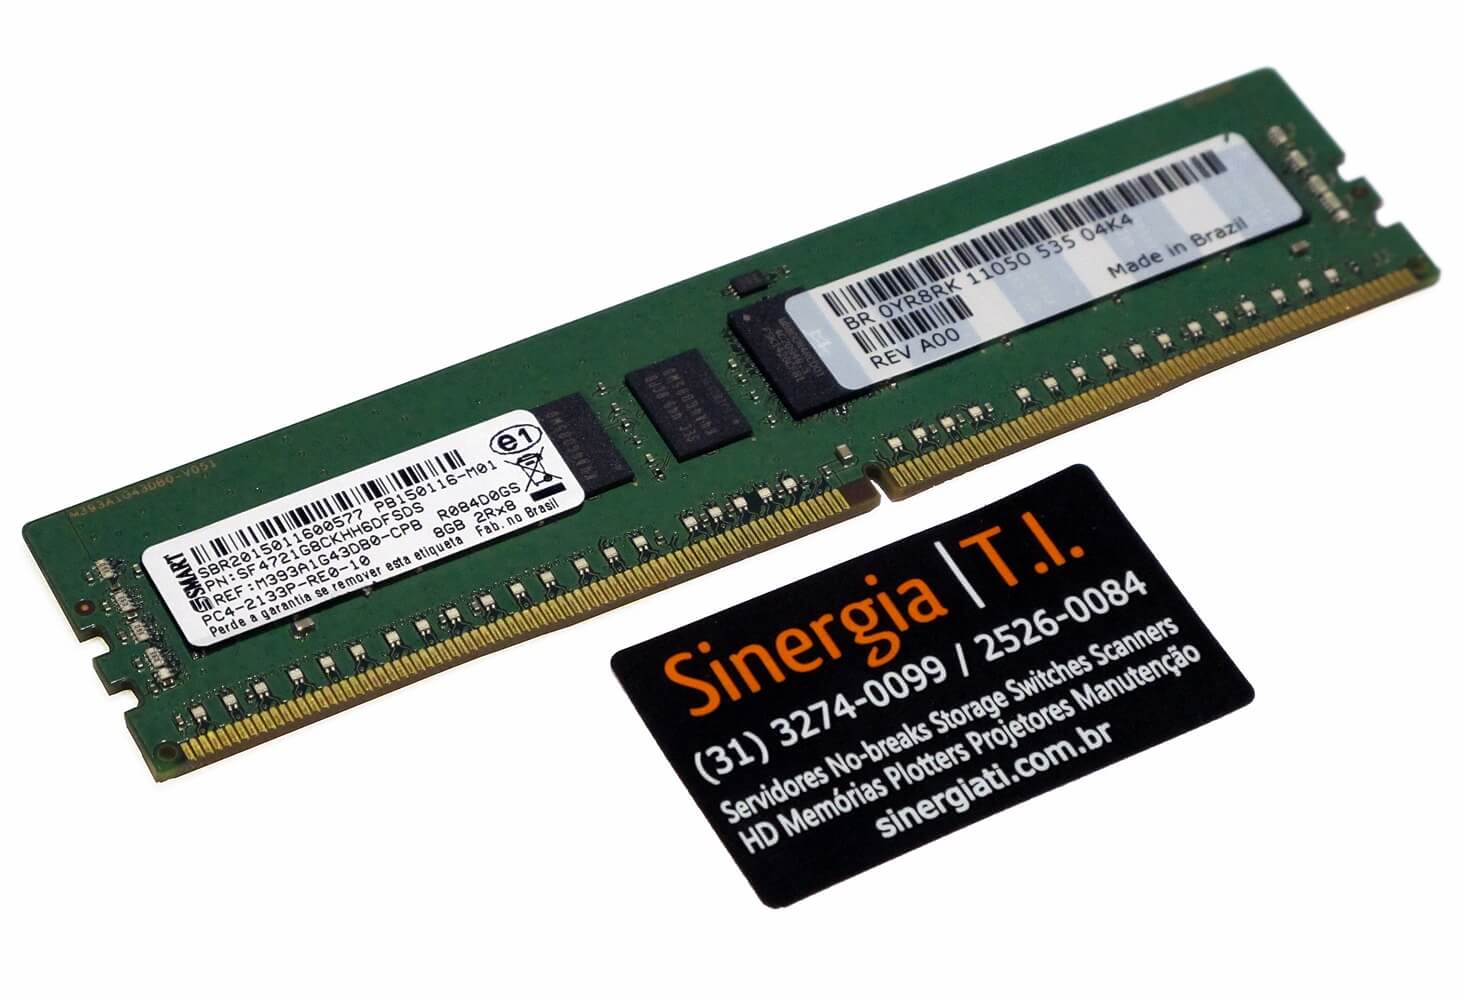 370-ABWG Memória RAM Dell 16GB 2RX4 PC4-2133P-RE0-10 DDR4 2133MHz BR R430 R530 R630 R730 R730xd R930 T330 T430 T530 T630 pronta entrega